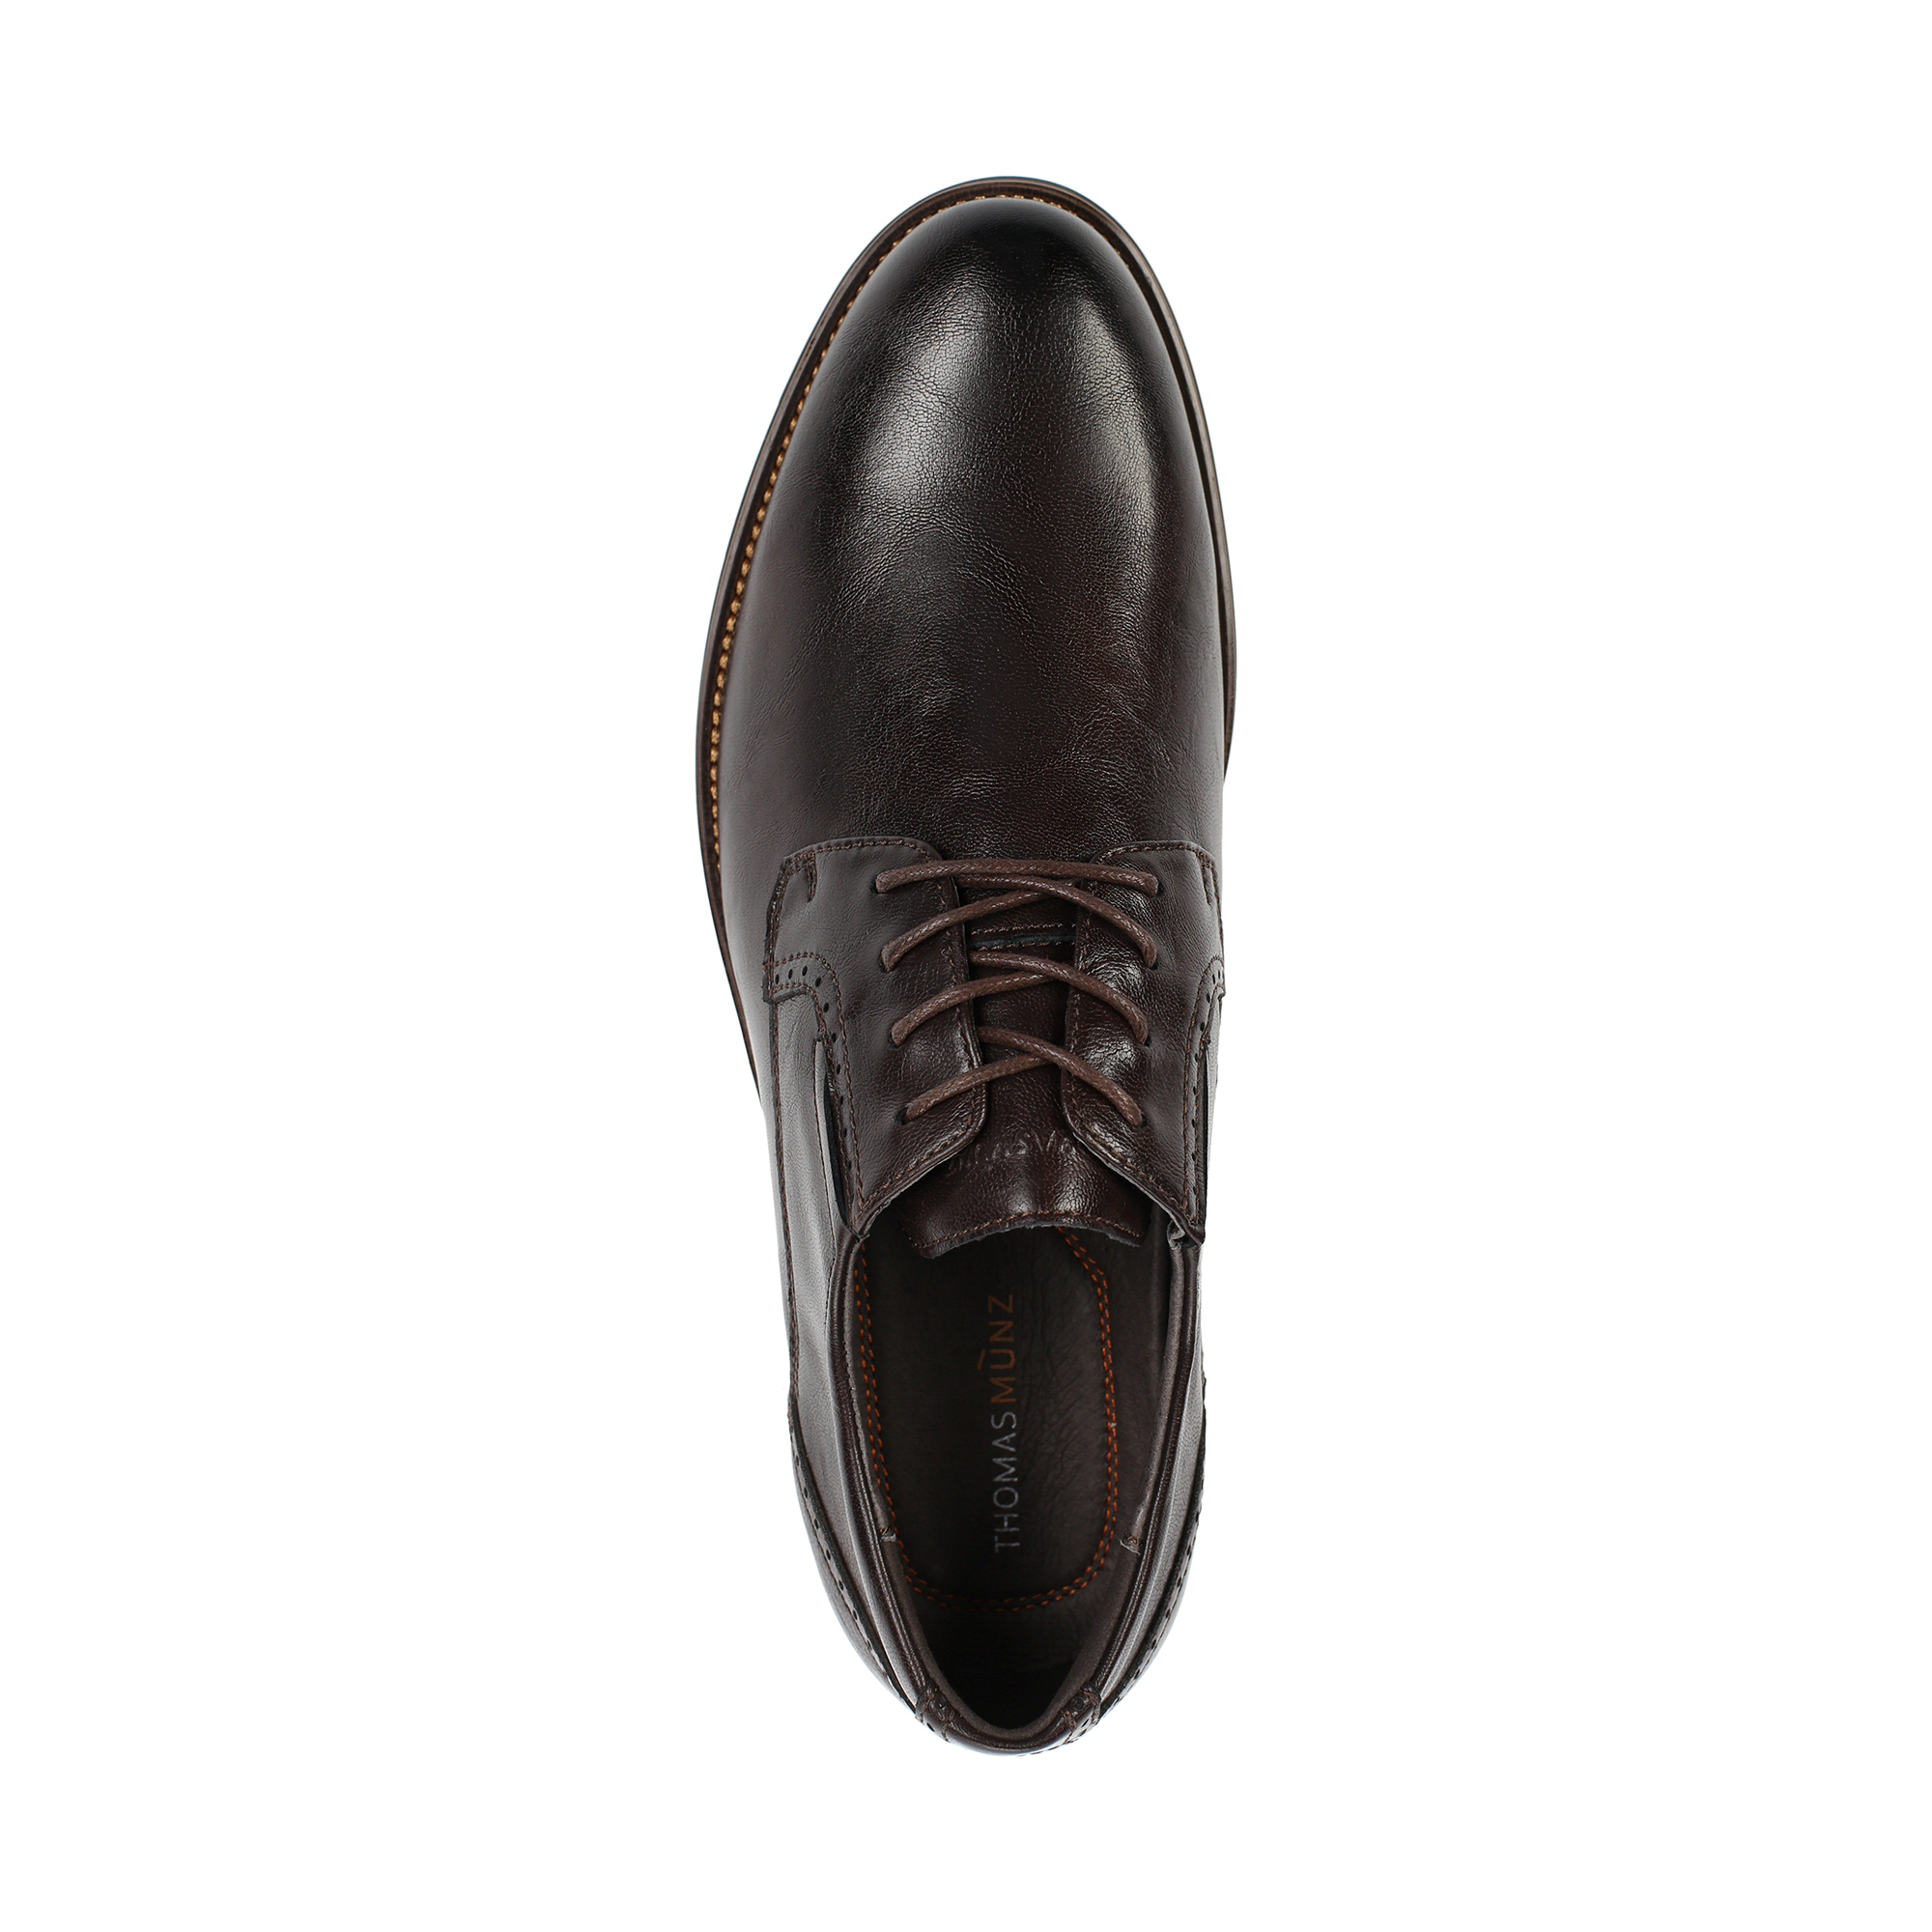 Туфли/полуботинки Thomas Munz 098-806B-1609, цвет коричневый, размер 40 - фото 5